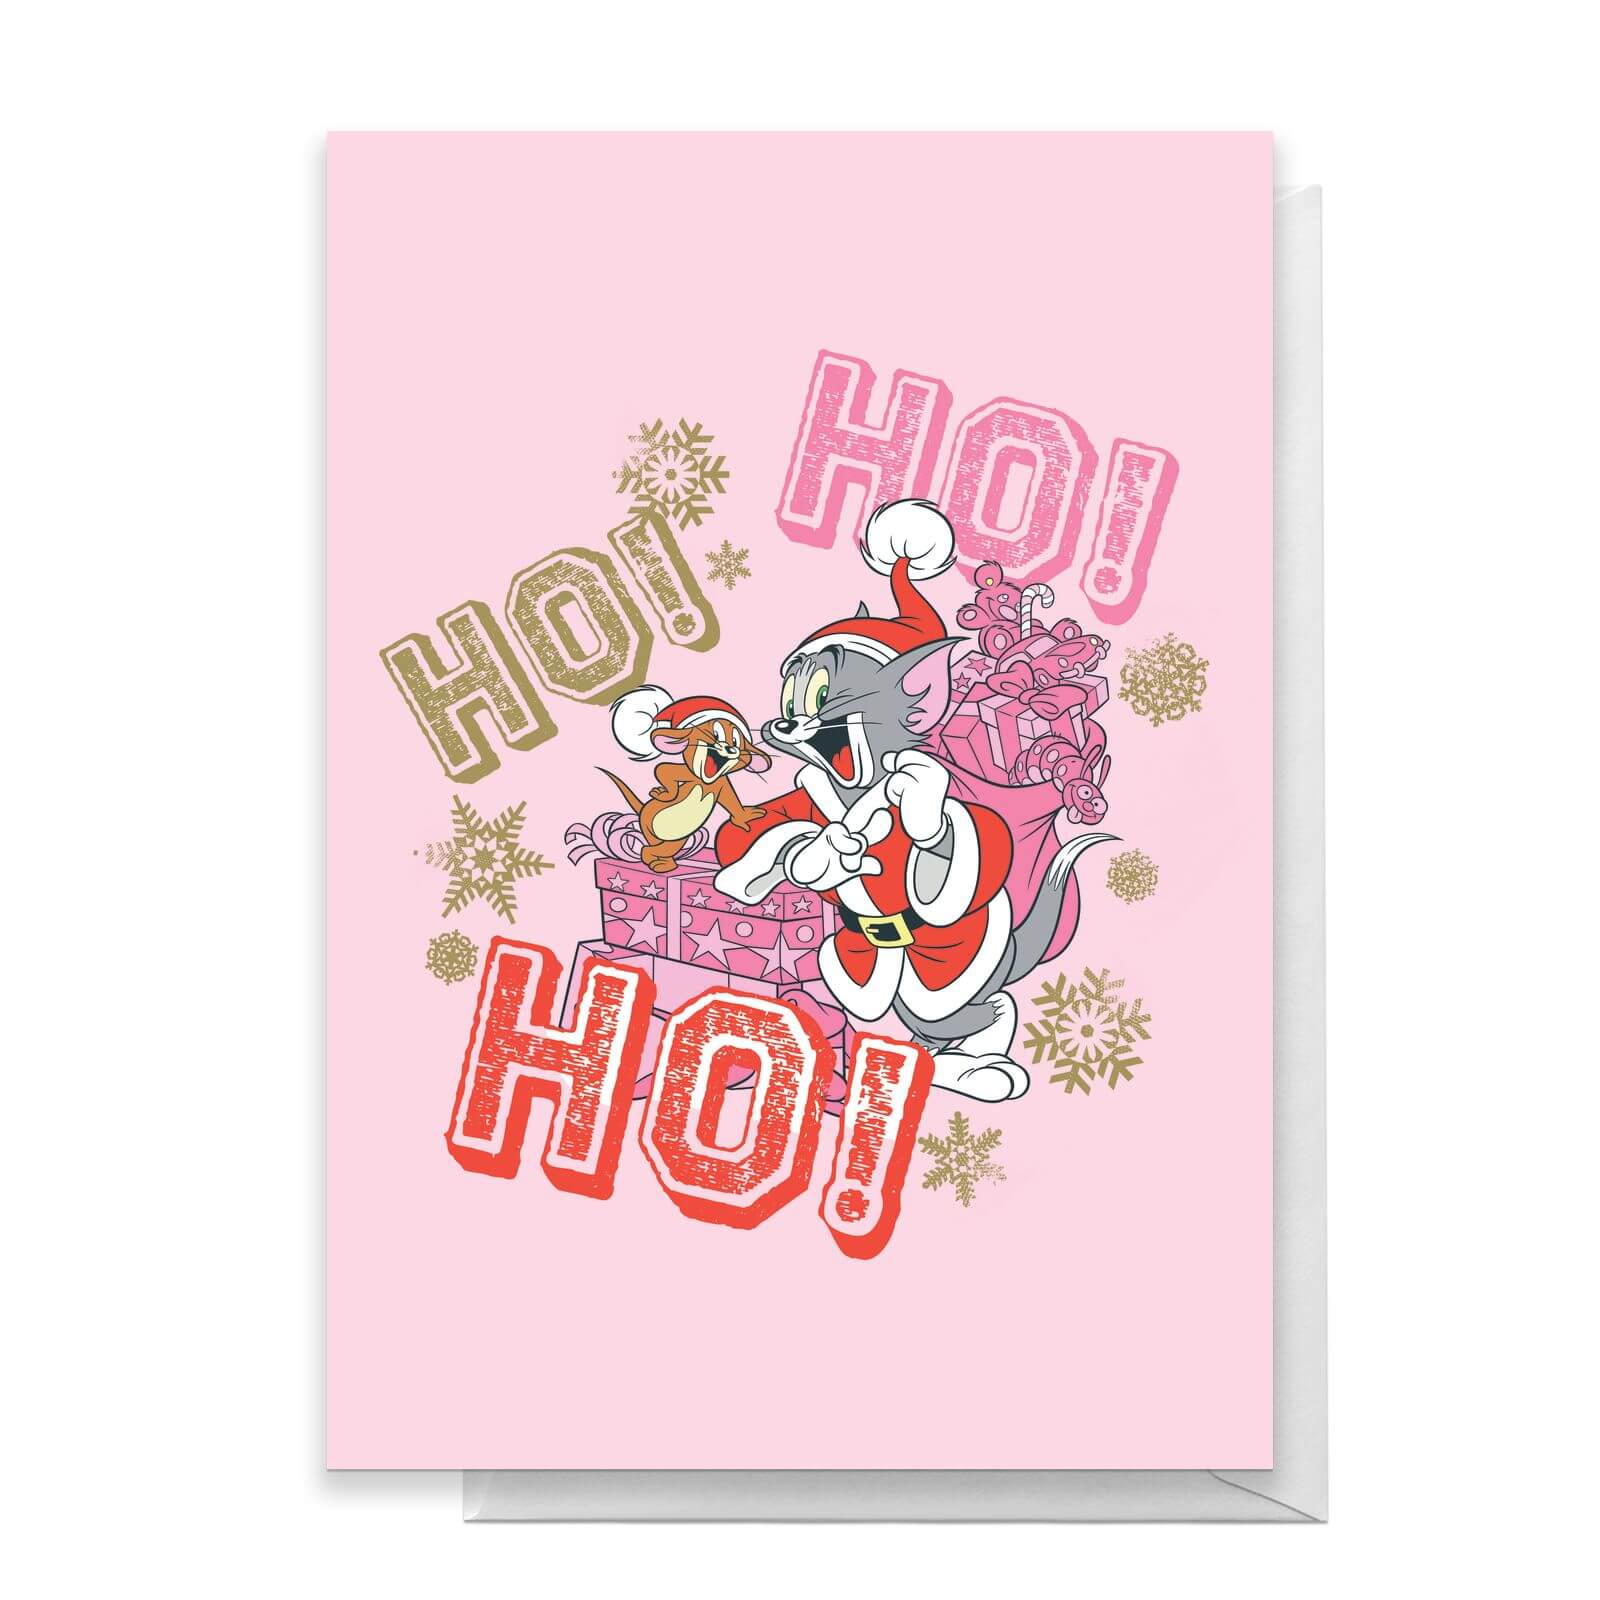 Tom And Jerry Ho! Ho! Ho! Greetings Card - Standard Card